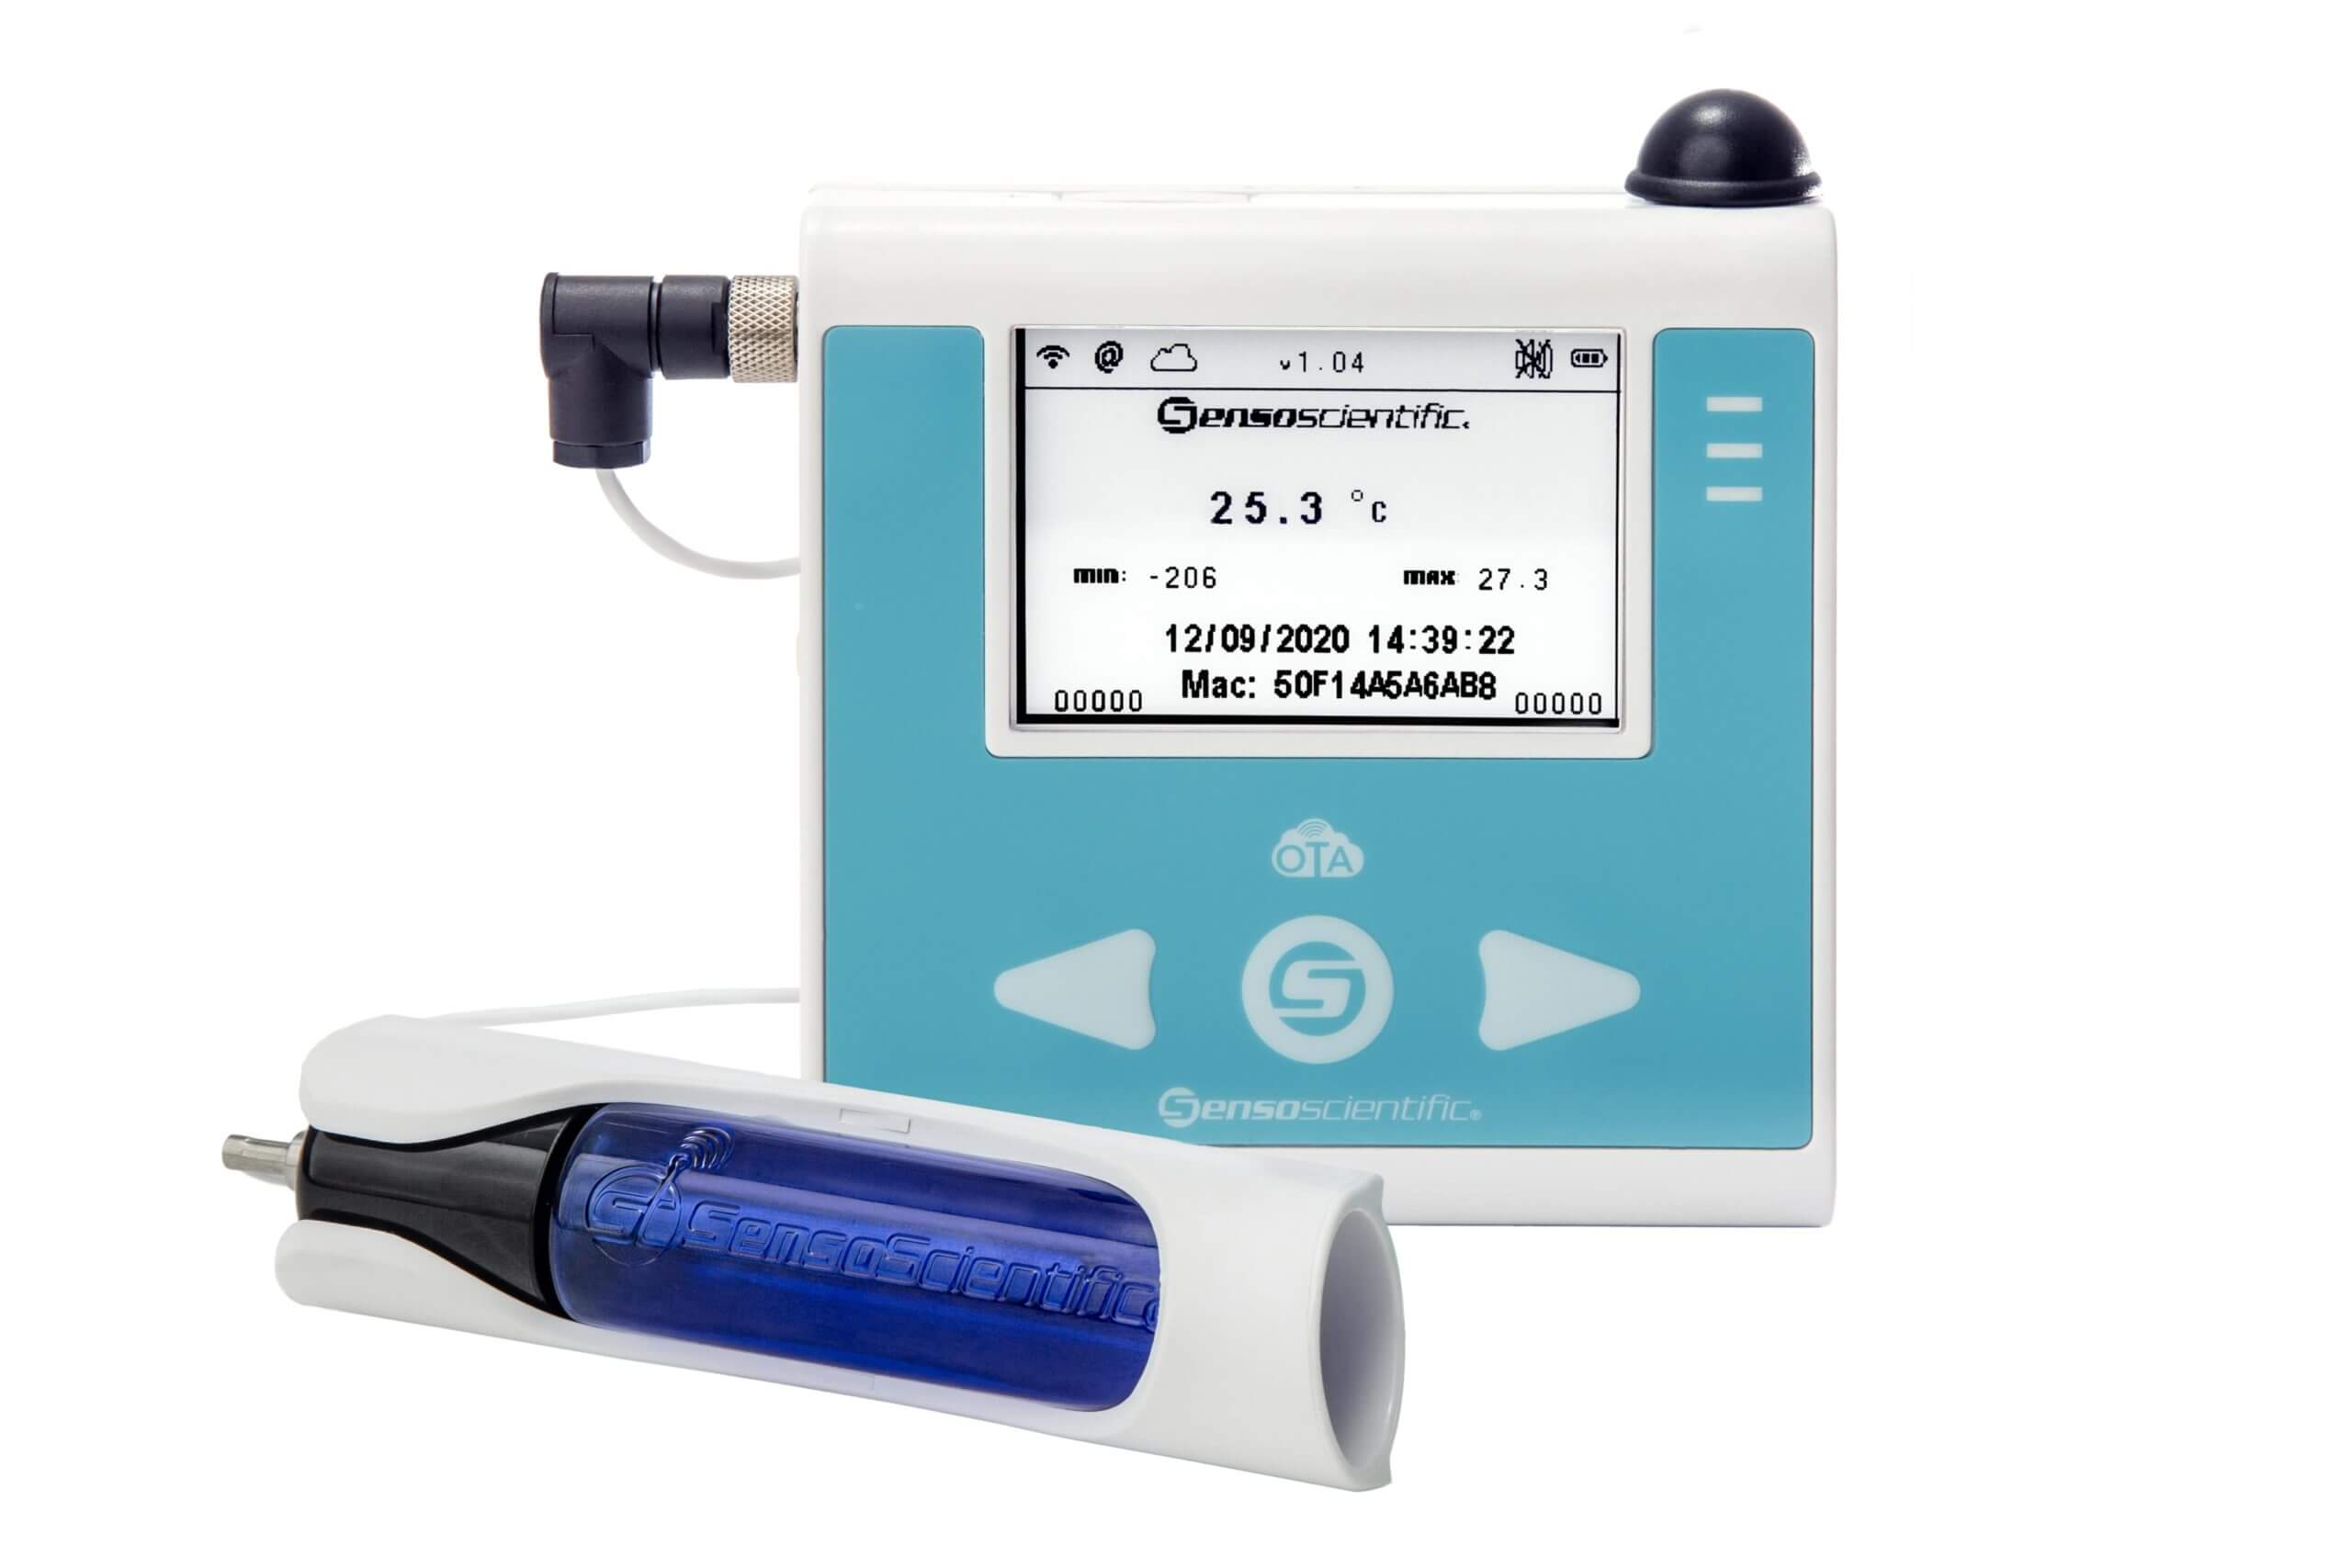 Remote Vaccine Temperature Monitoring Devices - VAXOPEDIA